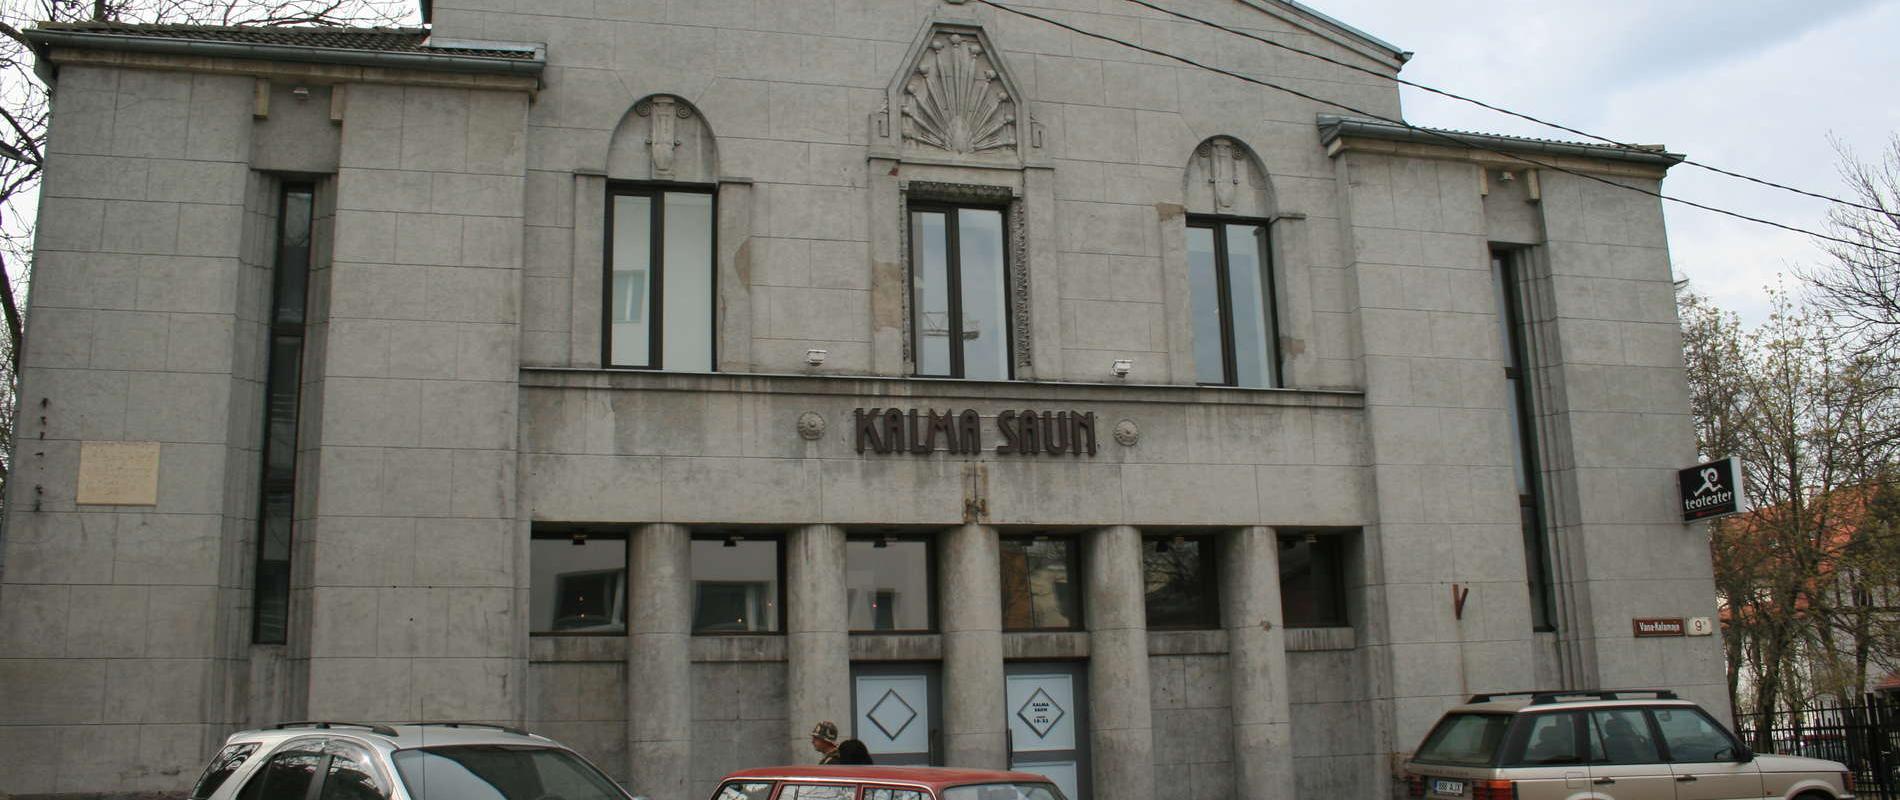 Kalma-Sauna in Tallinn